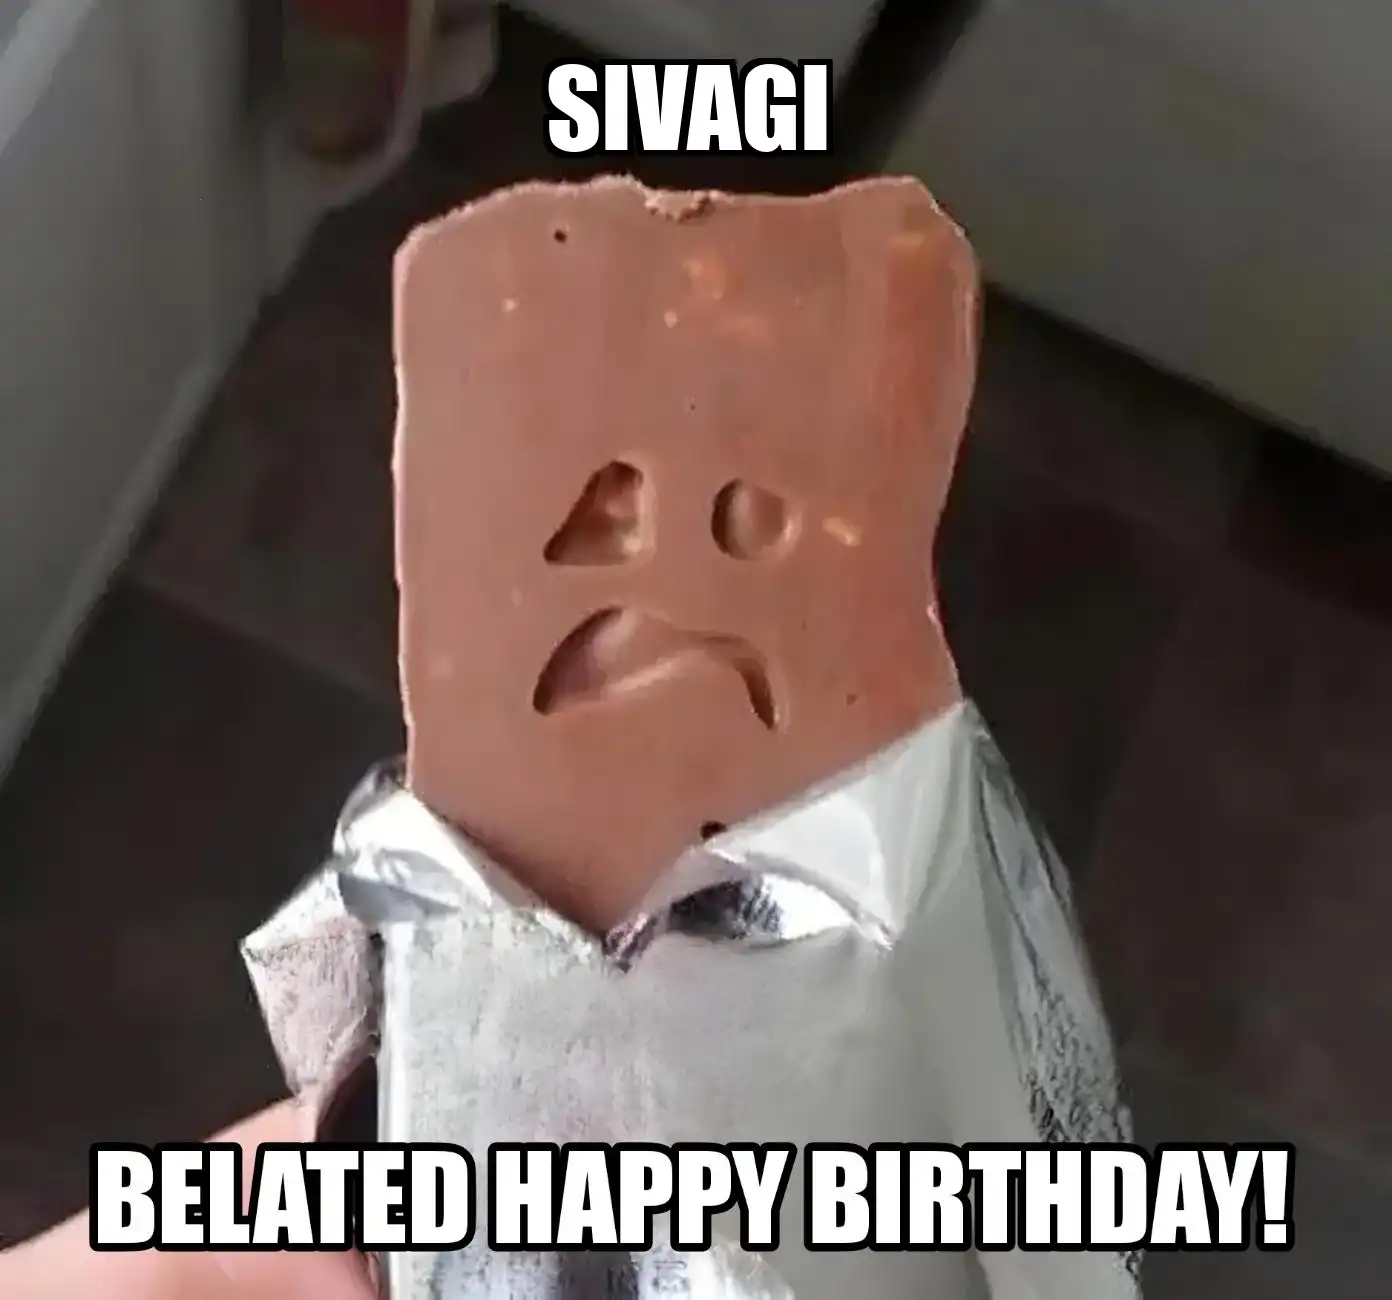 Happy Birthday Sivagi Belated Happy Birthday Meme